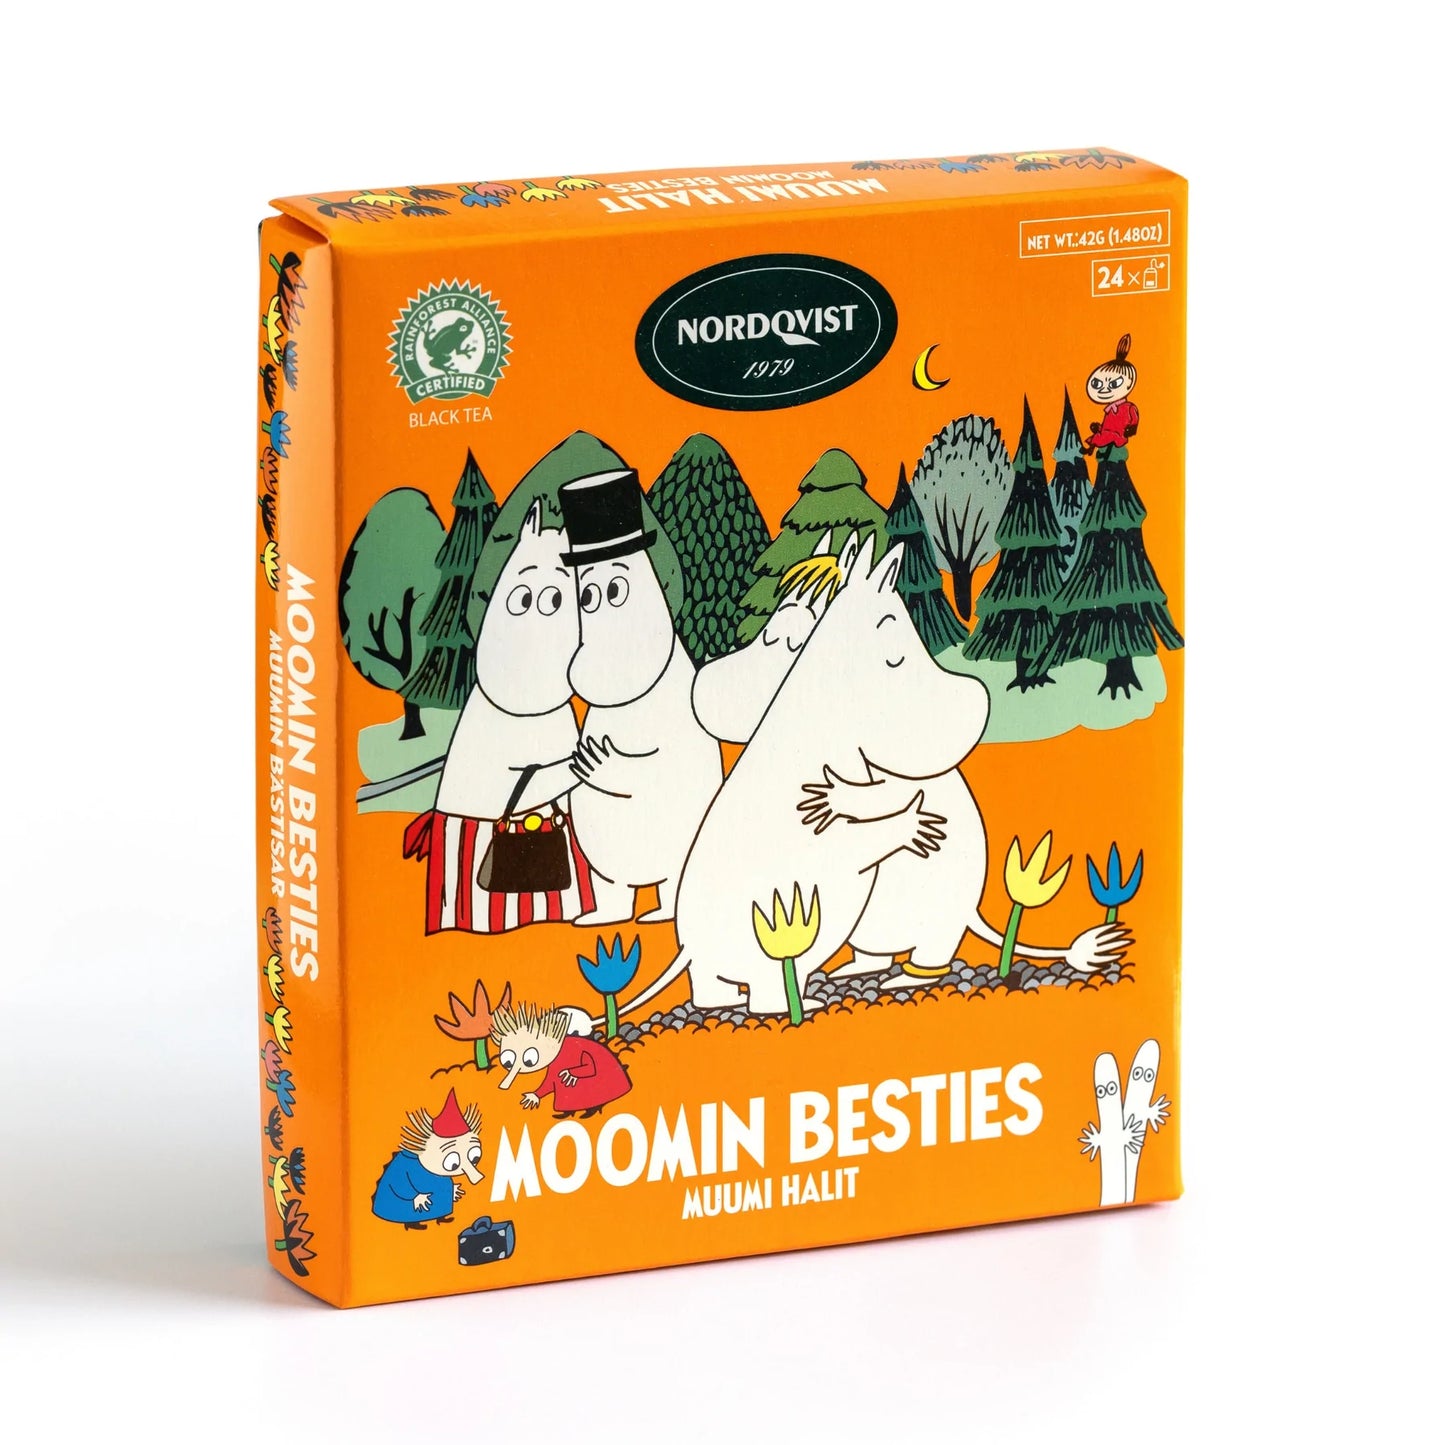 Nordqvist Moomin Besties Tea Assortment